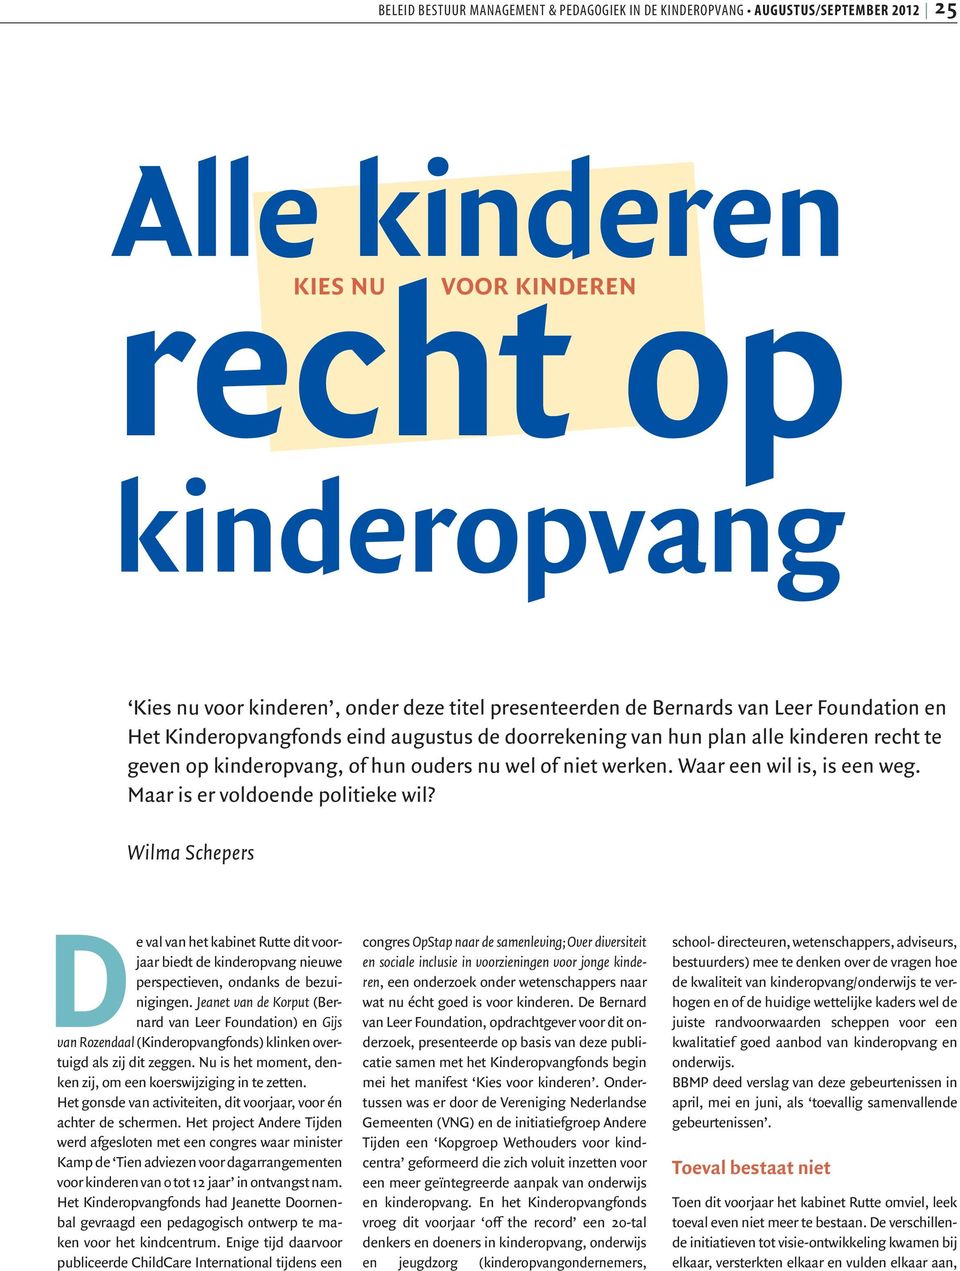 Wilma Schepers De val van het kabinet Rutte dit voorjaar biedt de kinderopvang nieuwe perspectieven, ondanks de bezuinigingen.